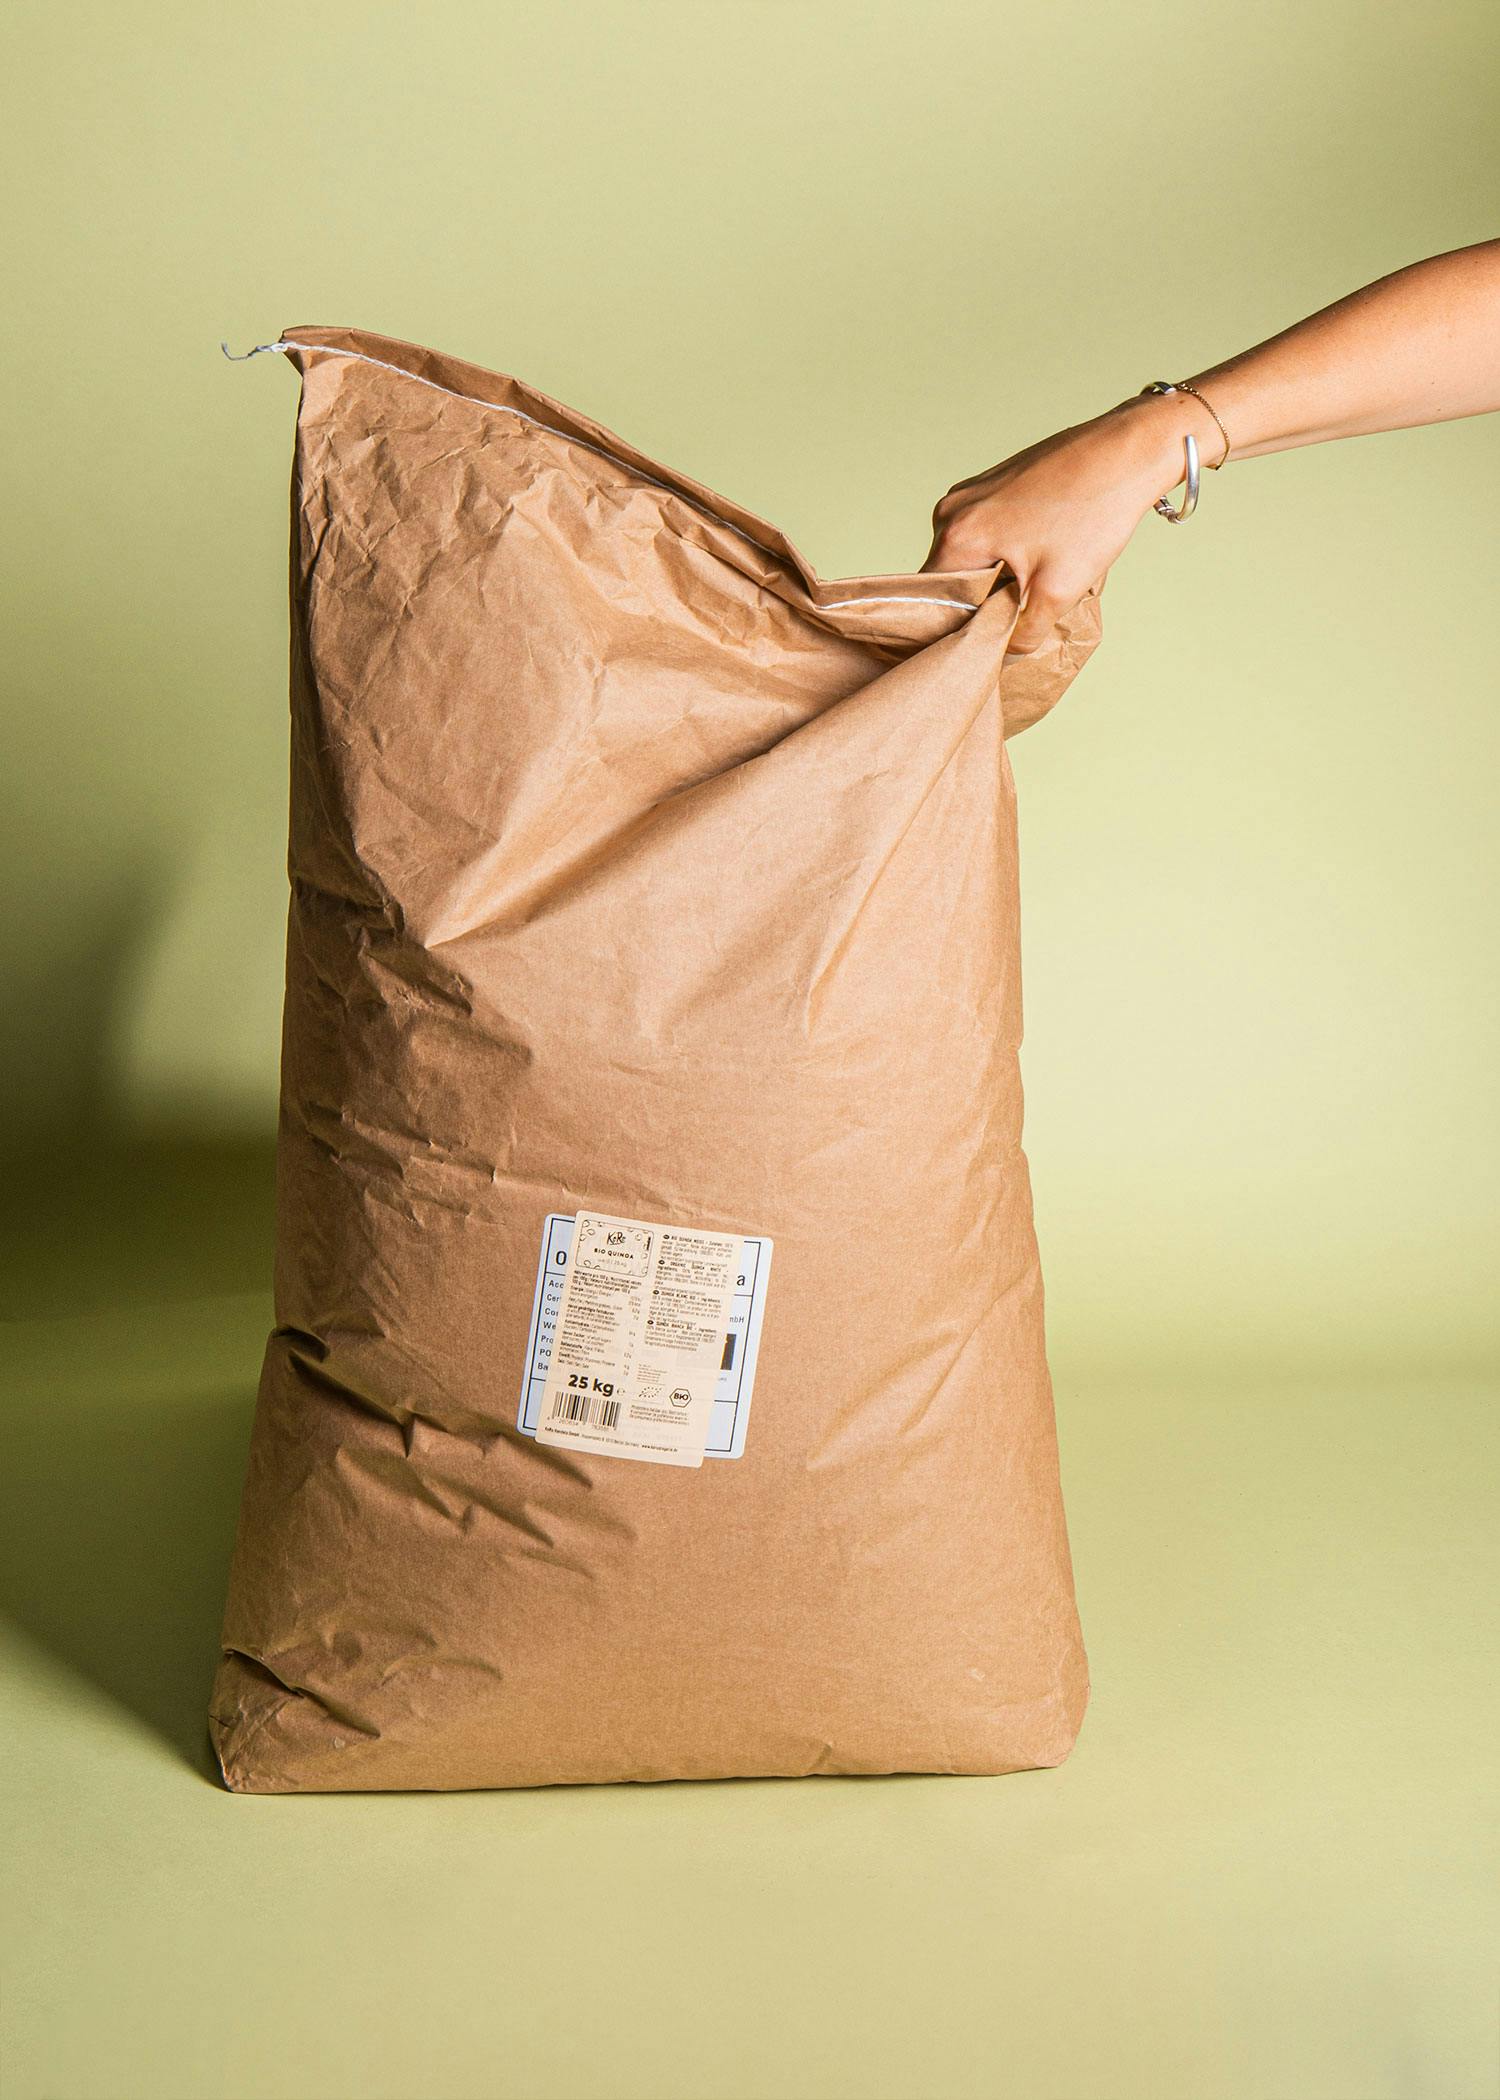 Tout ce qui brille n'est pas du papier : nos emballages écologiques KoRo